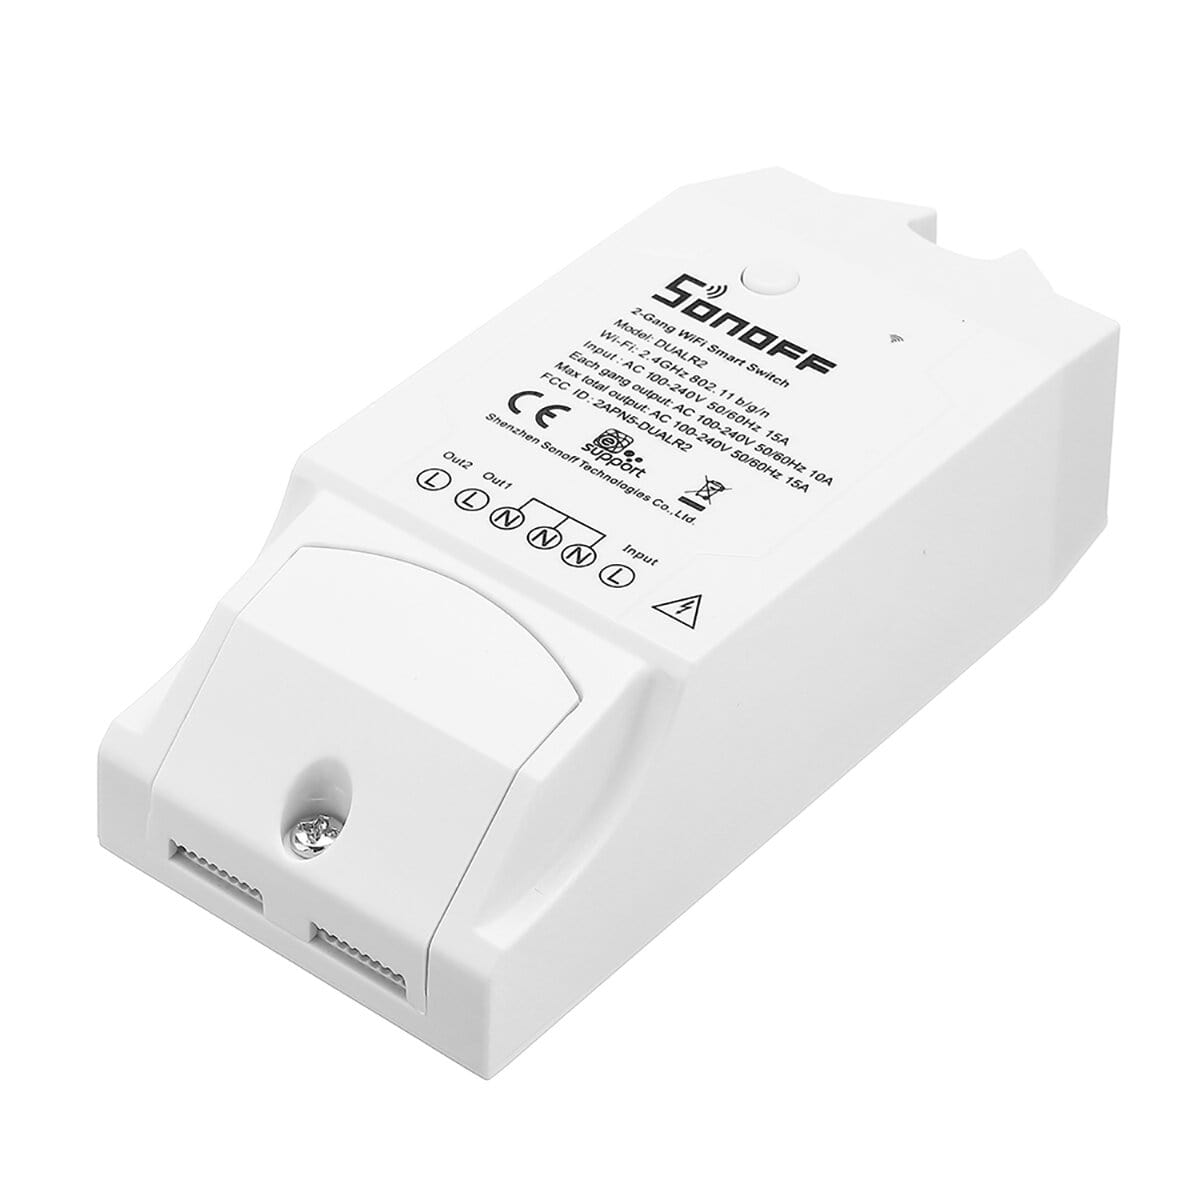 elecmartlk-sonoff-dualr2-wifi-wireless-smart-switch-2